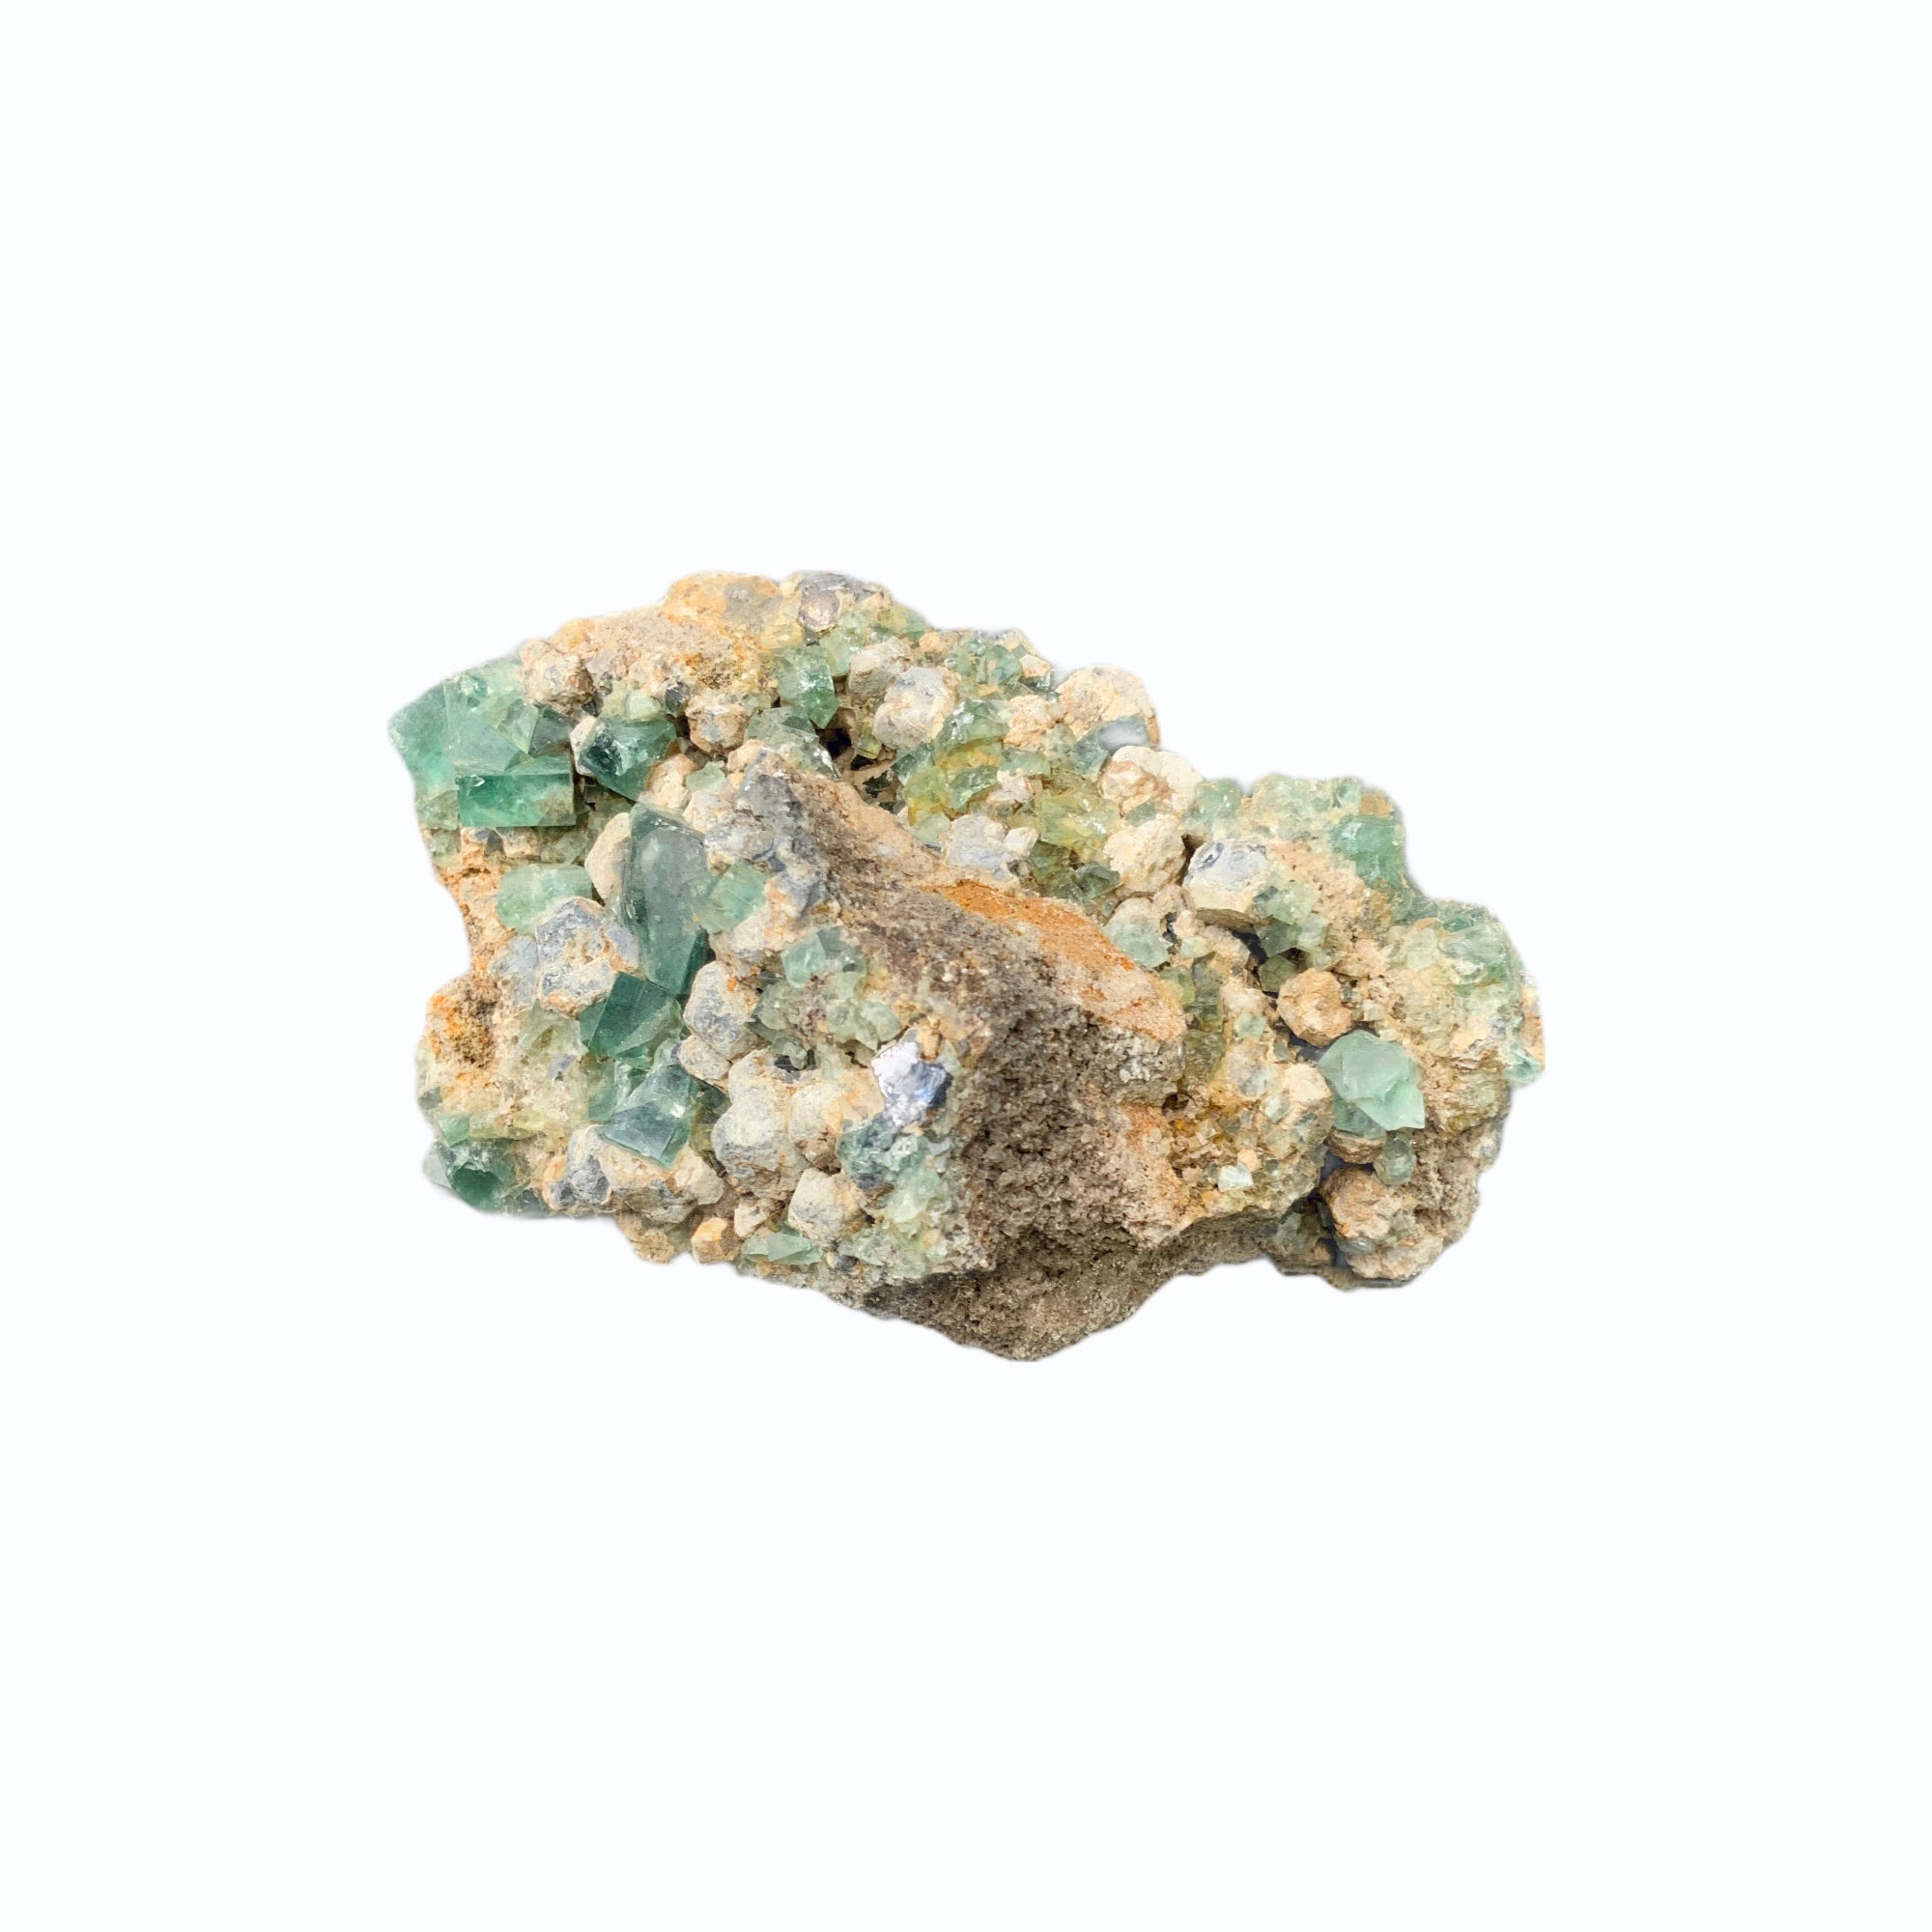 Attrape soleil Fluorite verte - My roller stone